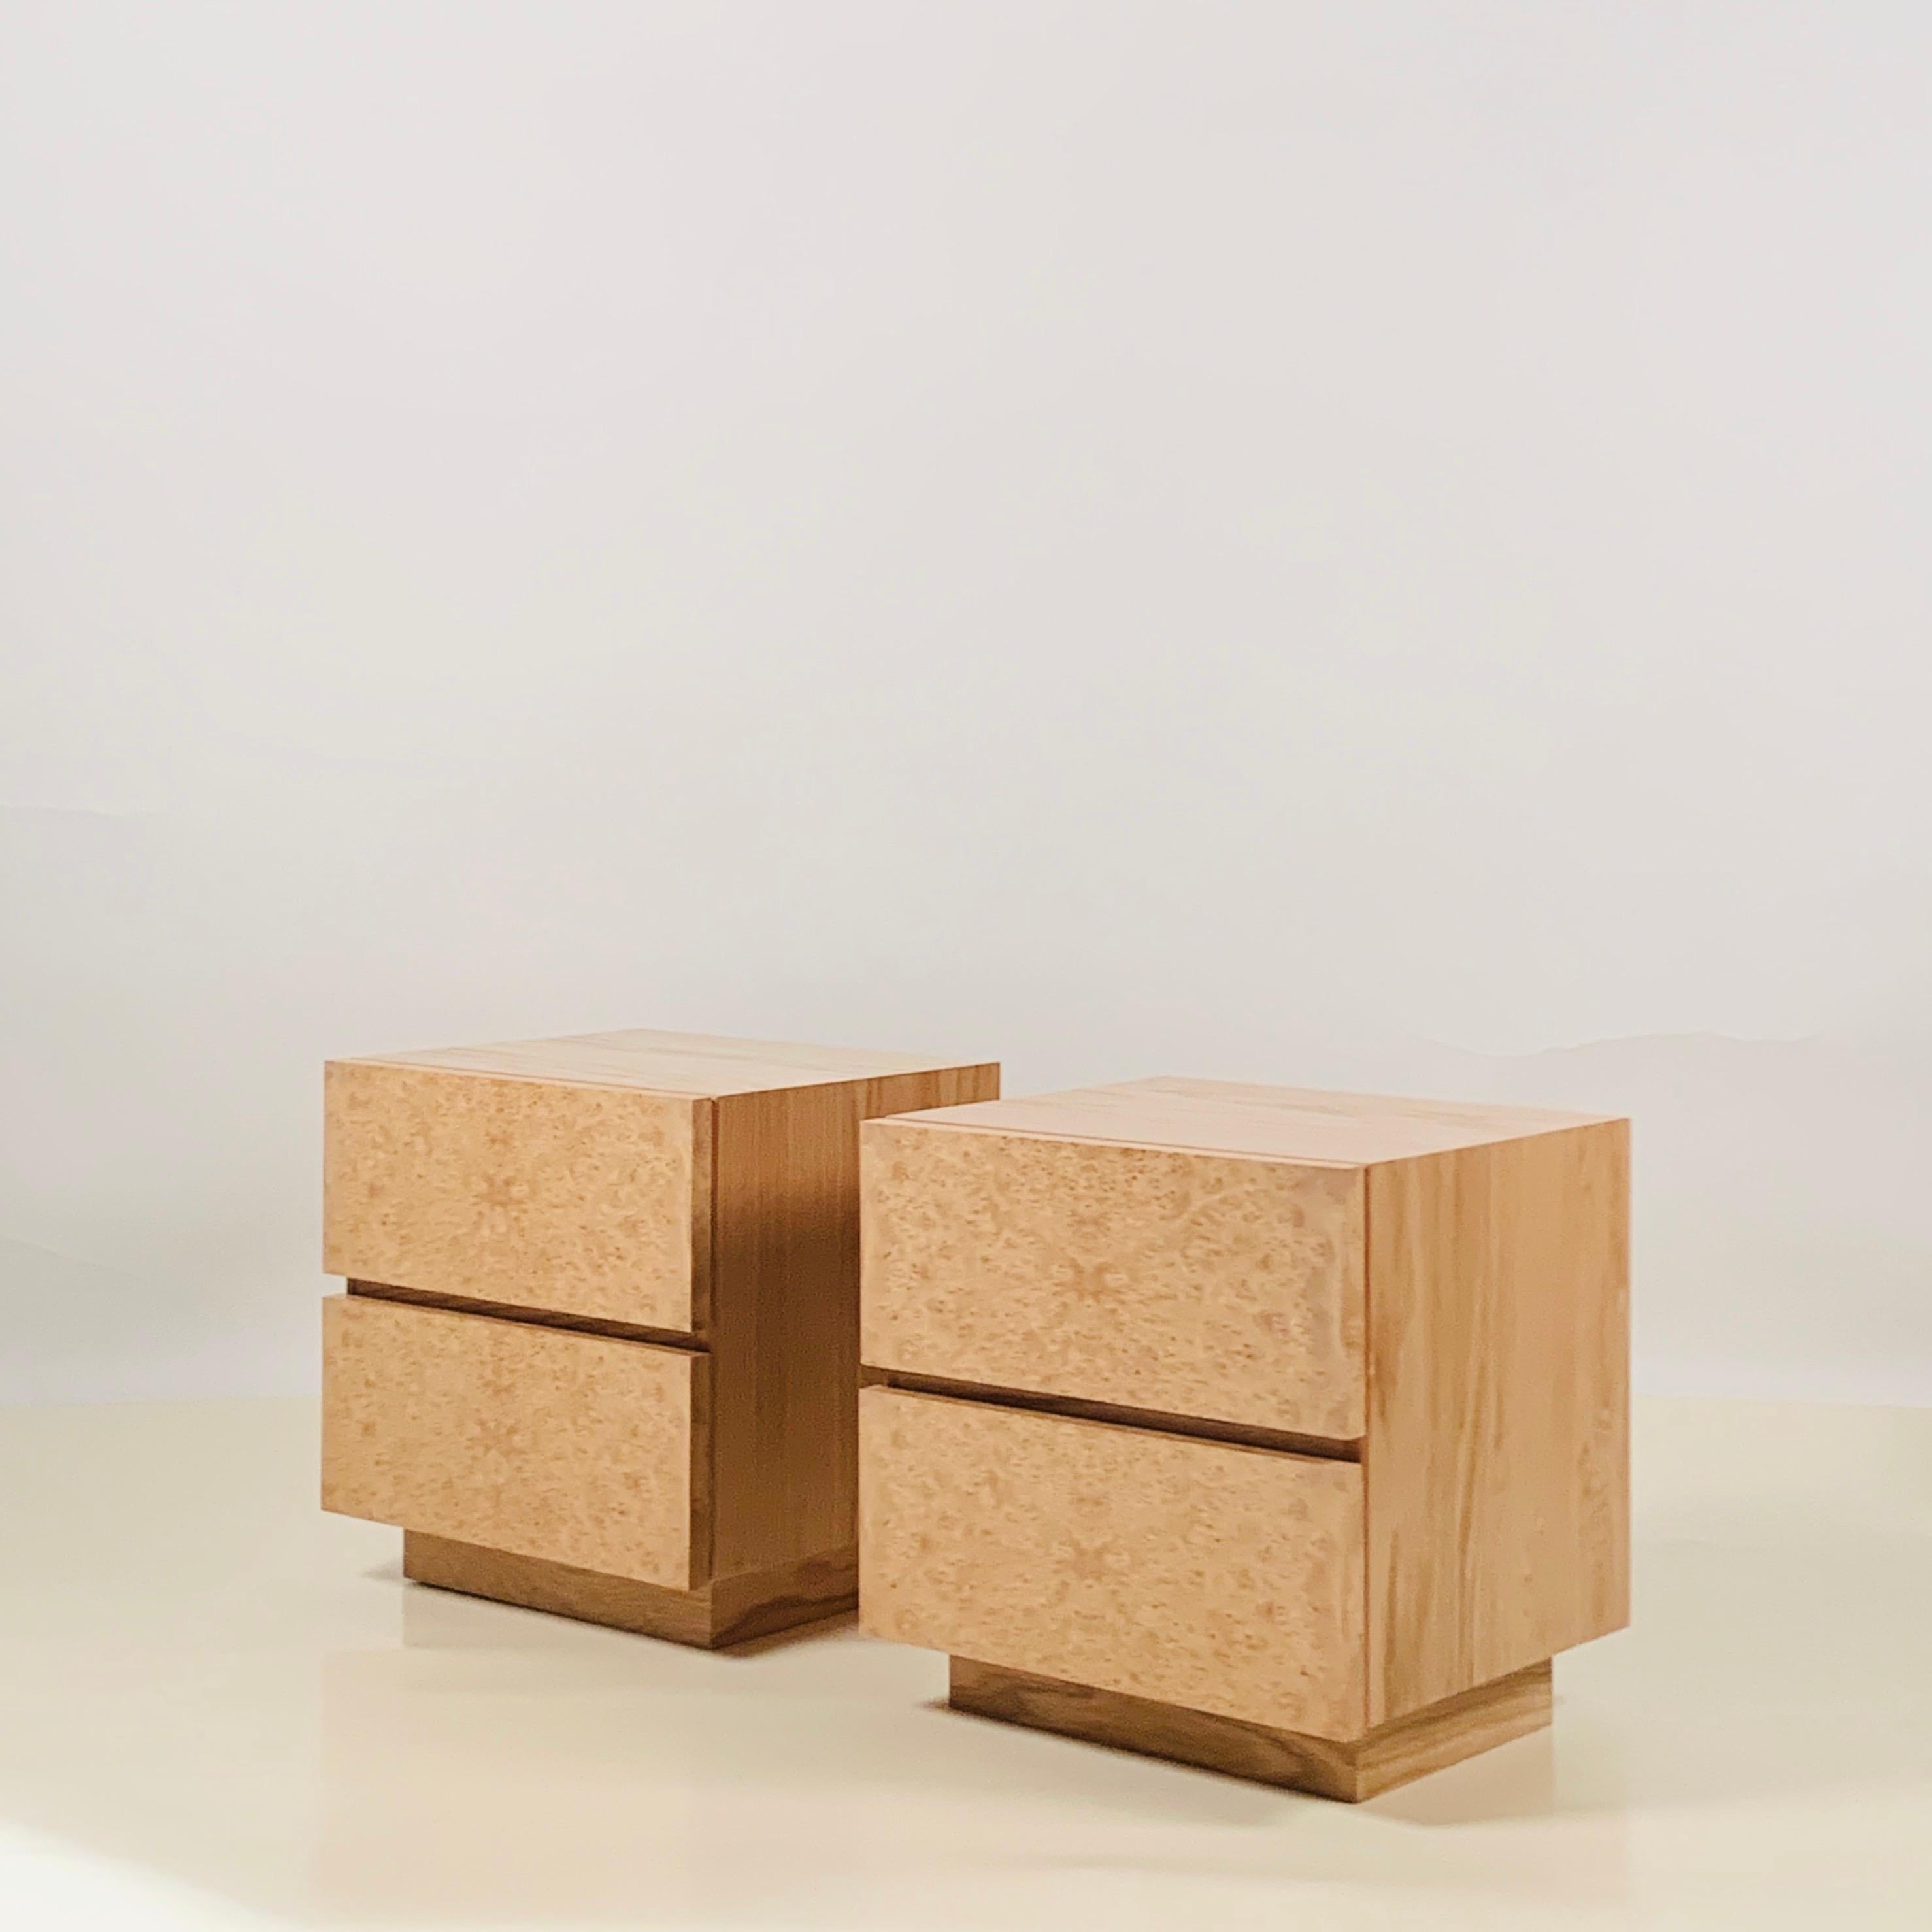 Minimalistisches Nachttischpaar 'Amboine' aus Wurzelholz von Design Frères.

Einfaches, funktionelles Design mit 2 tiefen Schubladen pro Nachttisch.

Das Schlafzimmerbild zeigt ein ähnlich großes Paar.